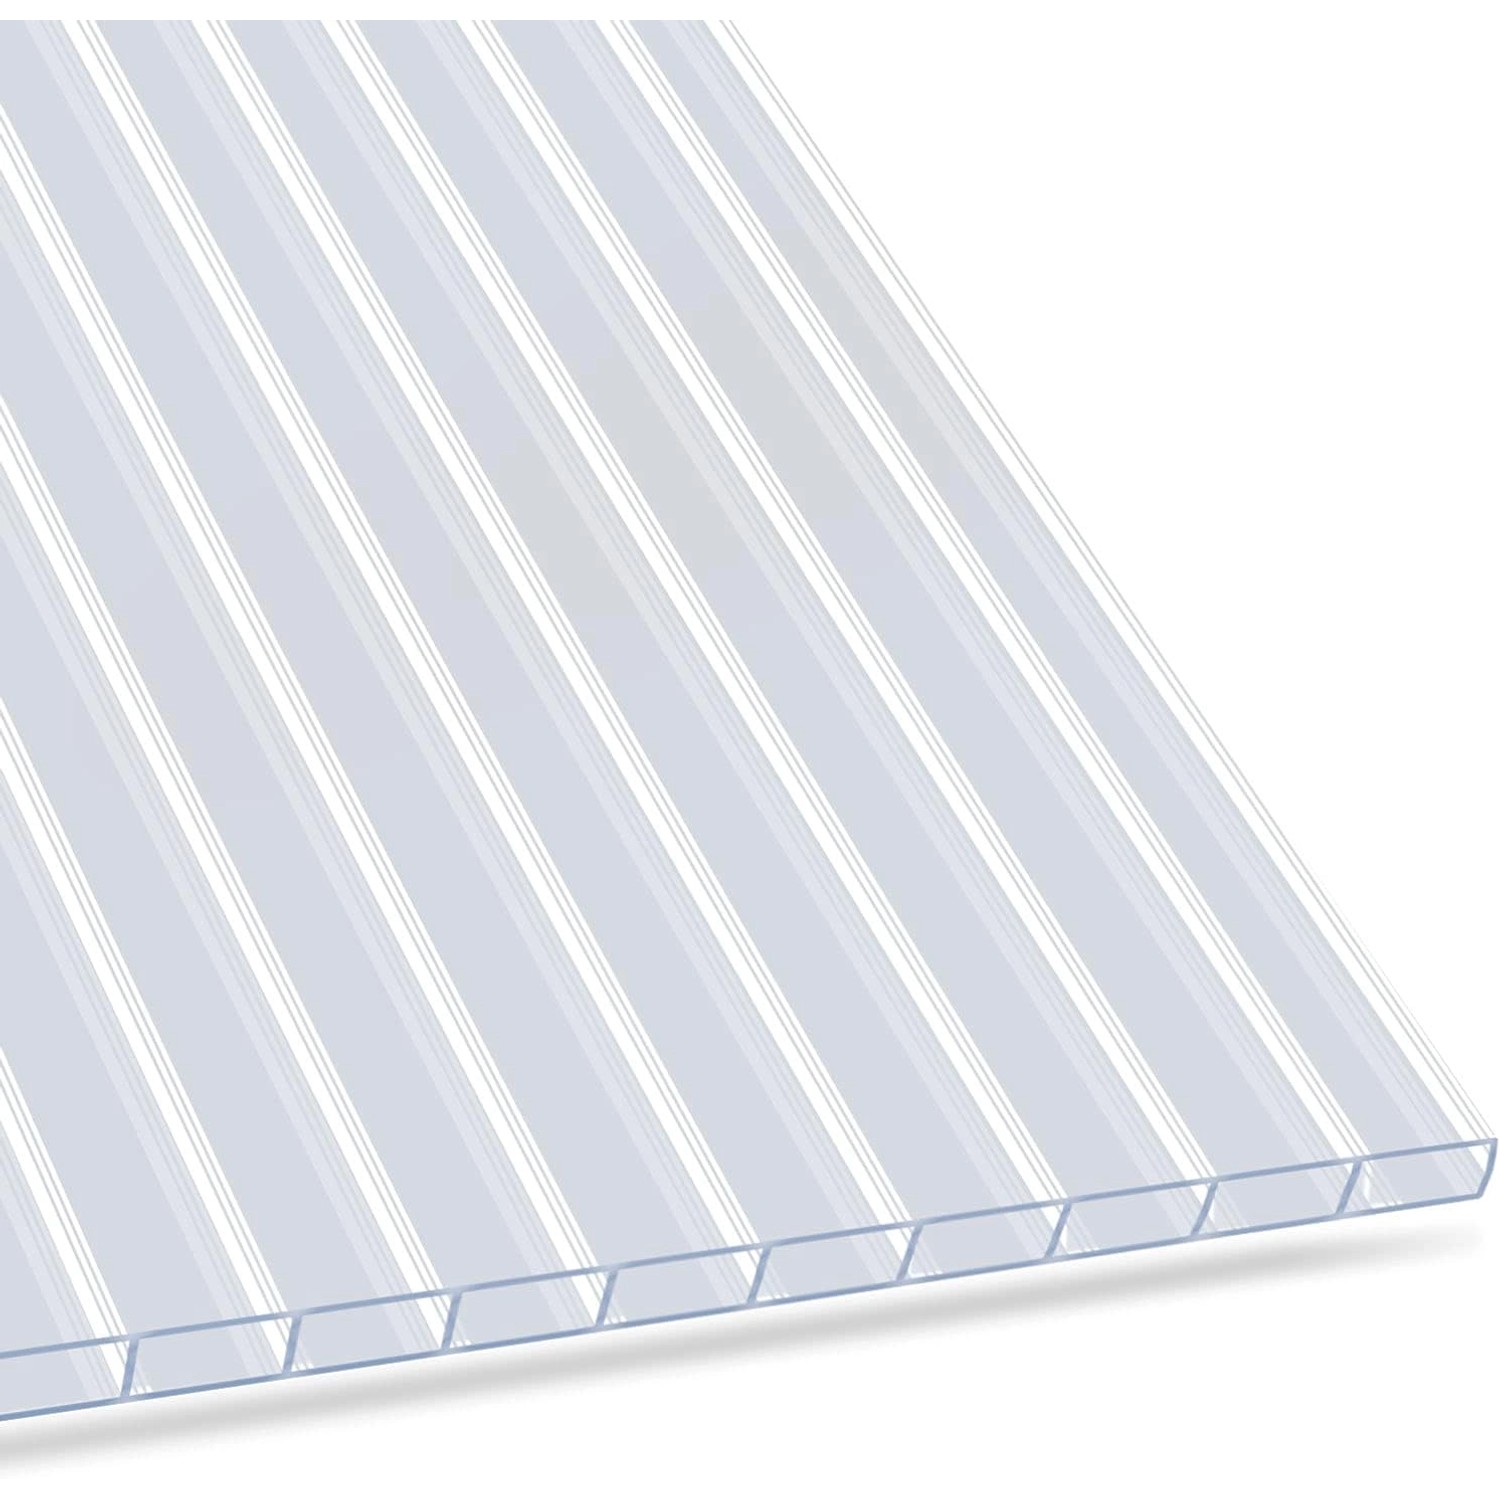 KARAT Doppelstegplatte aus Polycarbonat 60,5 x 121 cm transparent - Stegplatte für Gewächshäuser - 6 mm Stärke